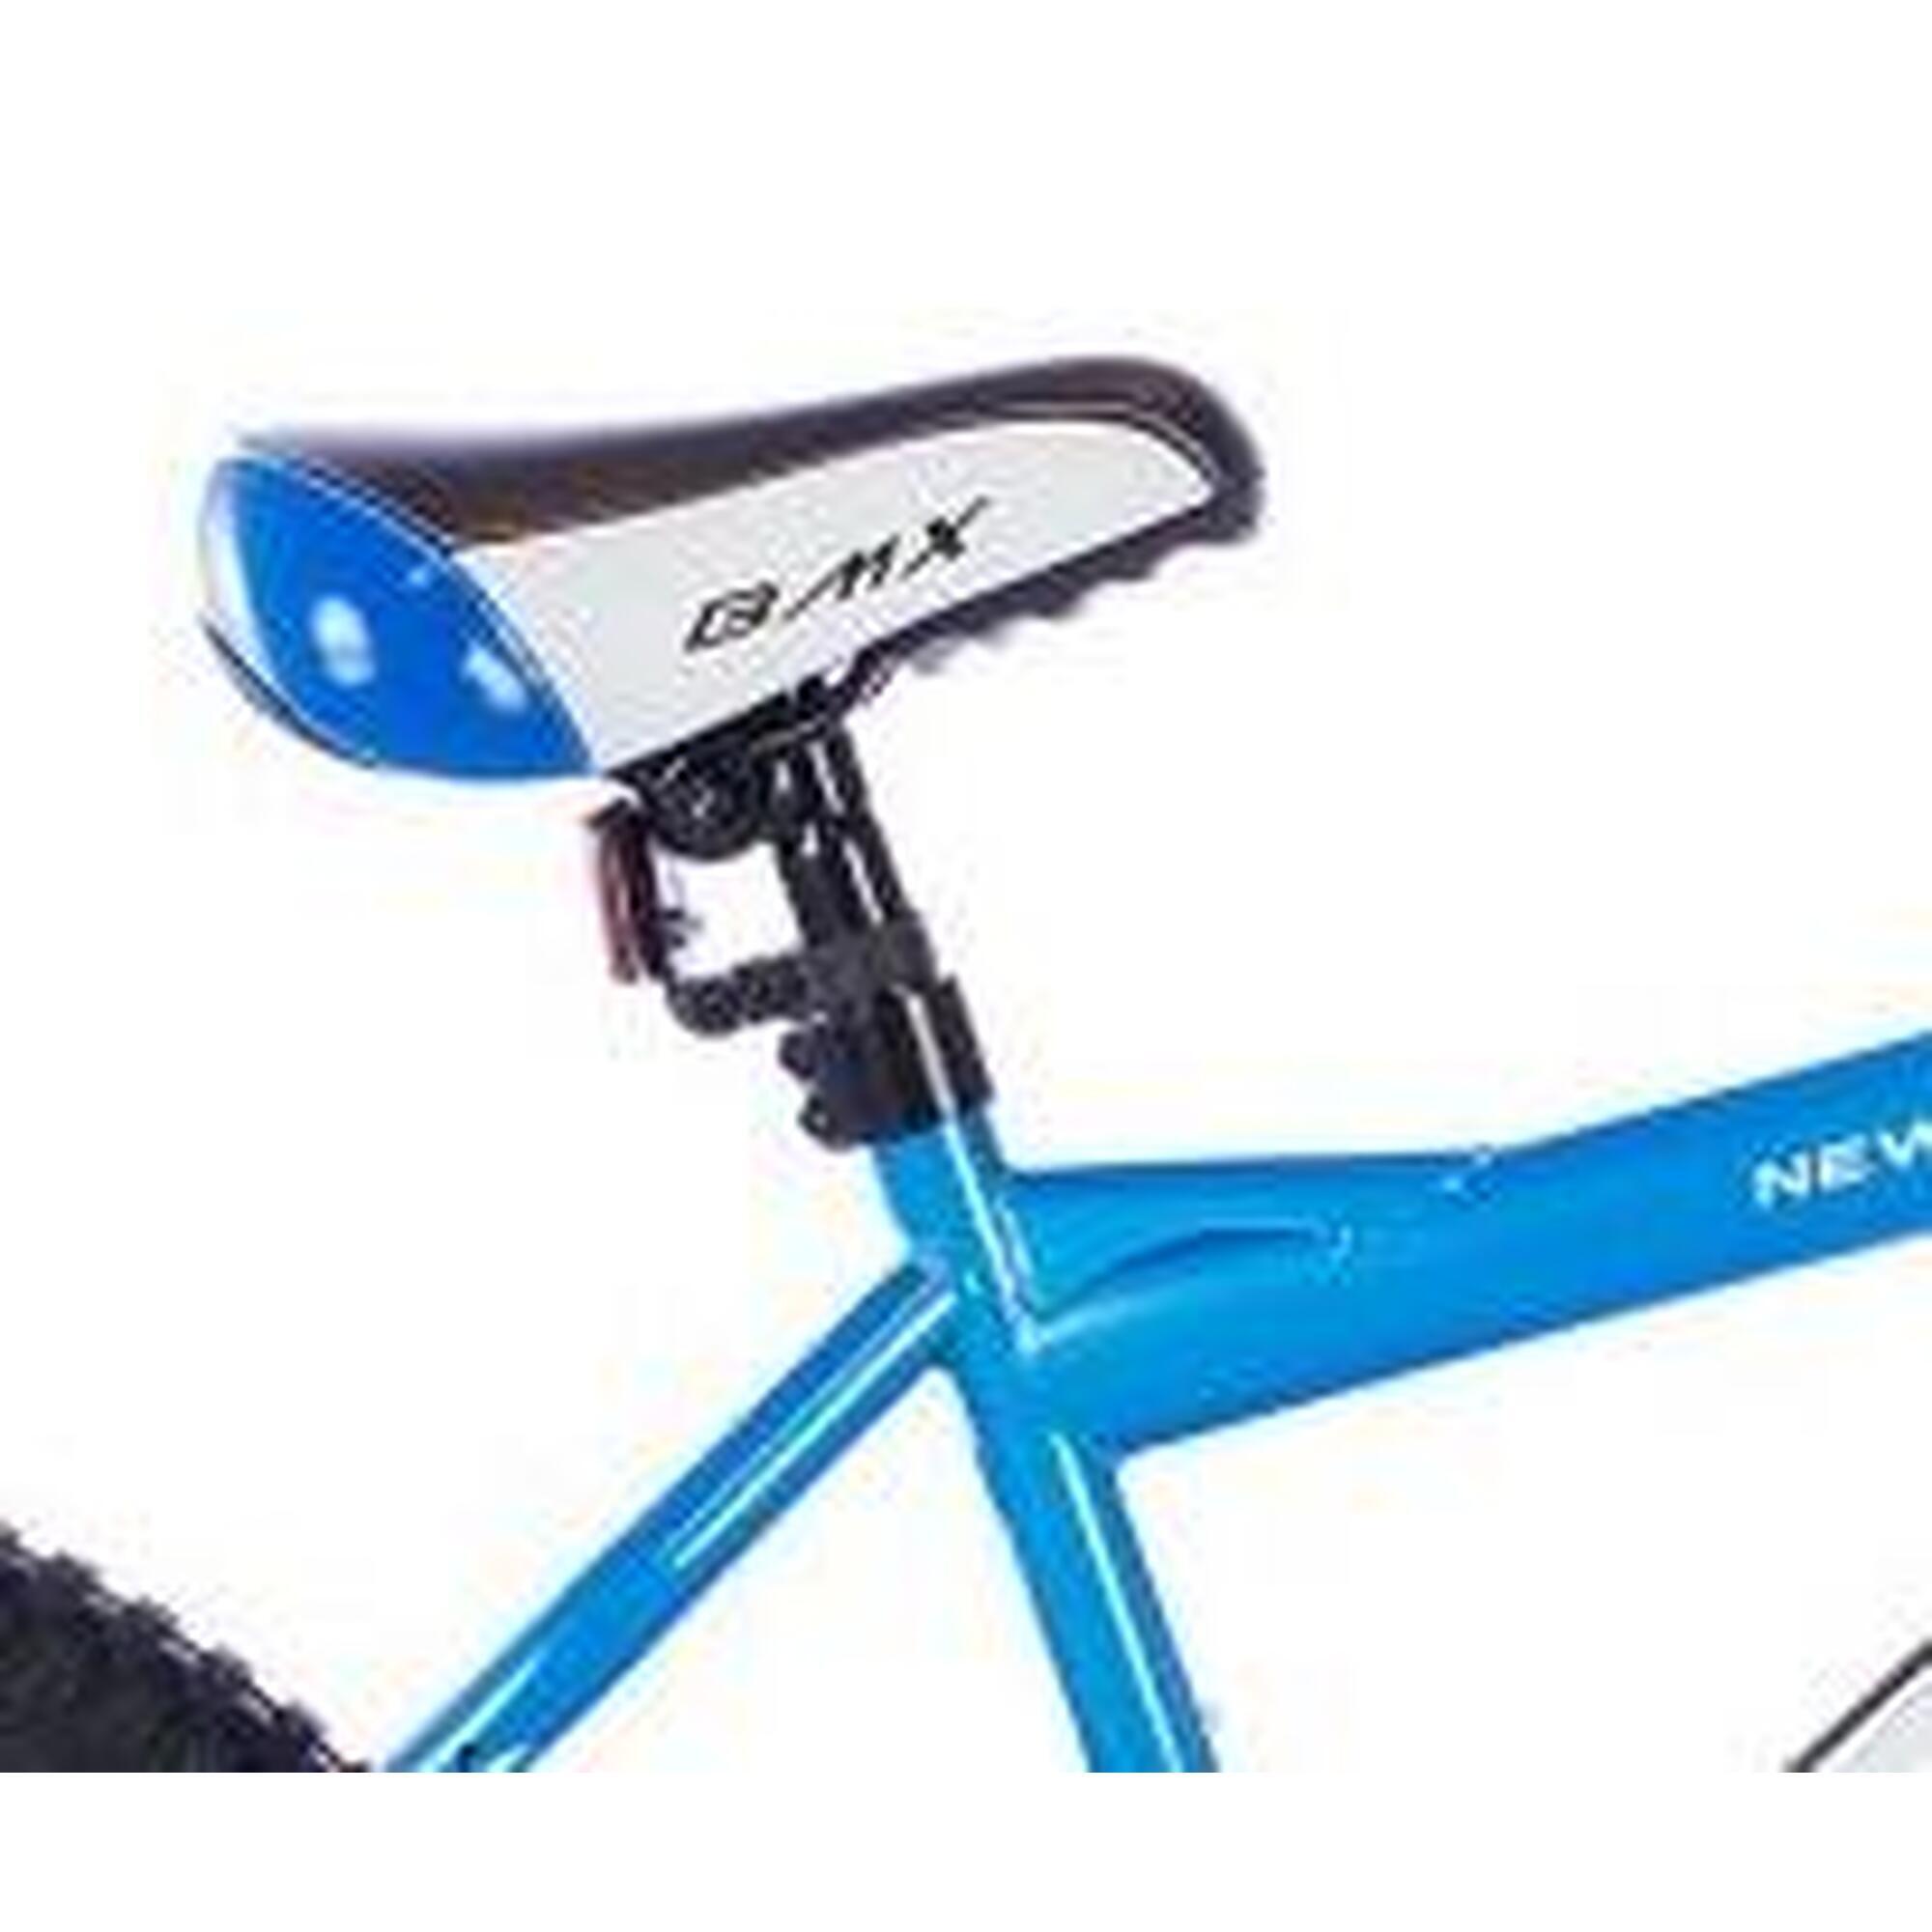 Vélo pour garçons BMX Cross Spirit Cheetah Bleu 20 Pouces